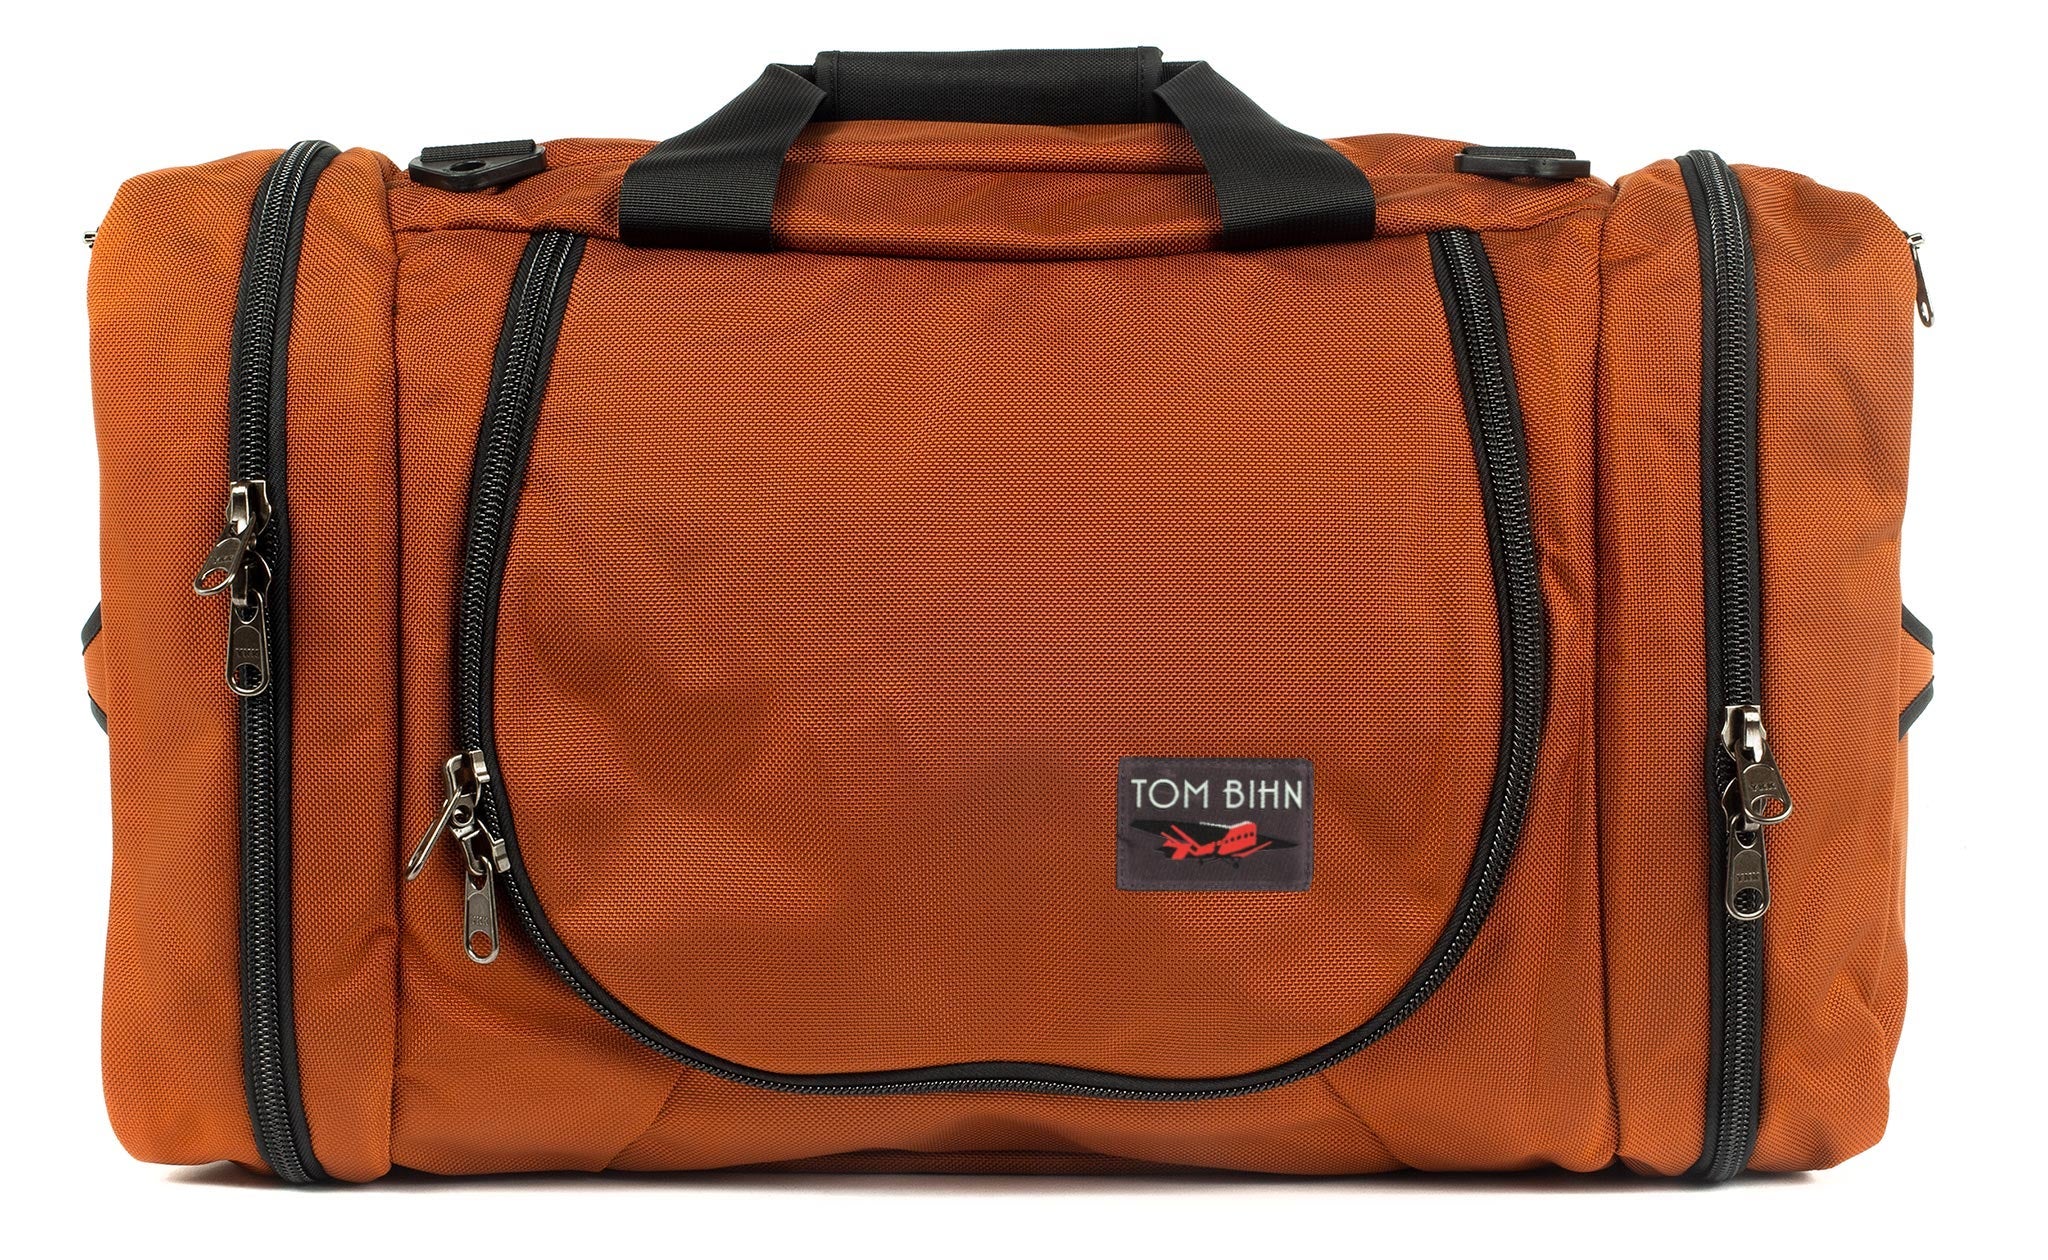 Designer figured out how to make a $2,700 designer-style bag for $45